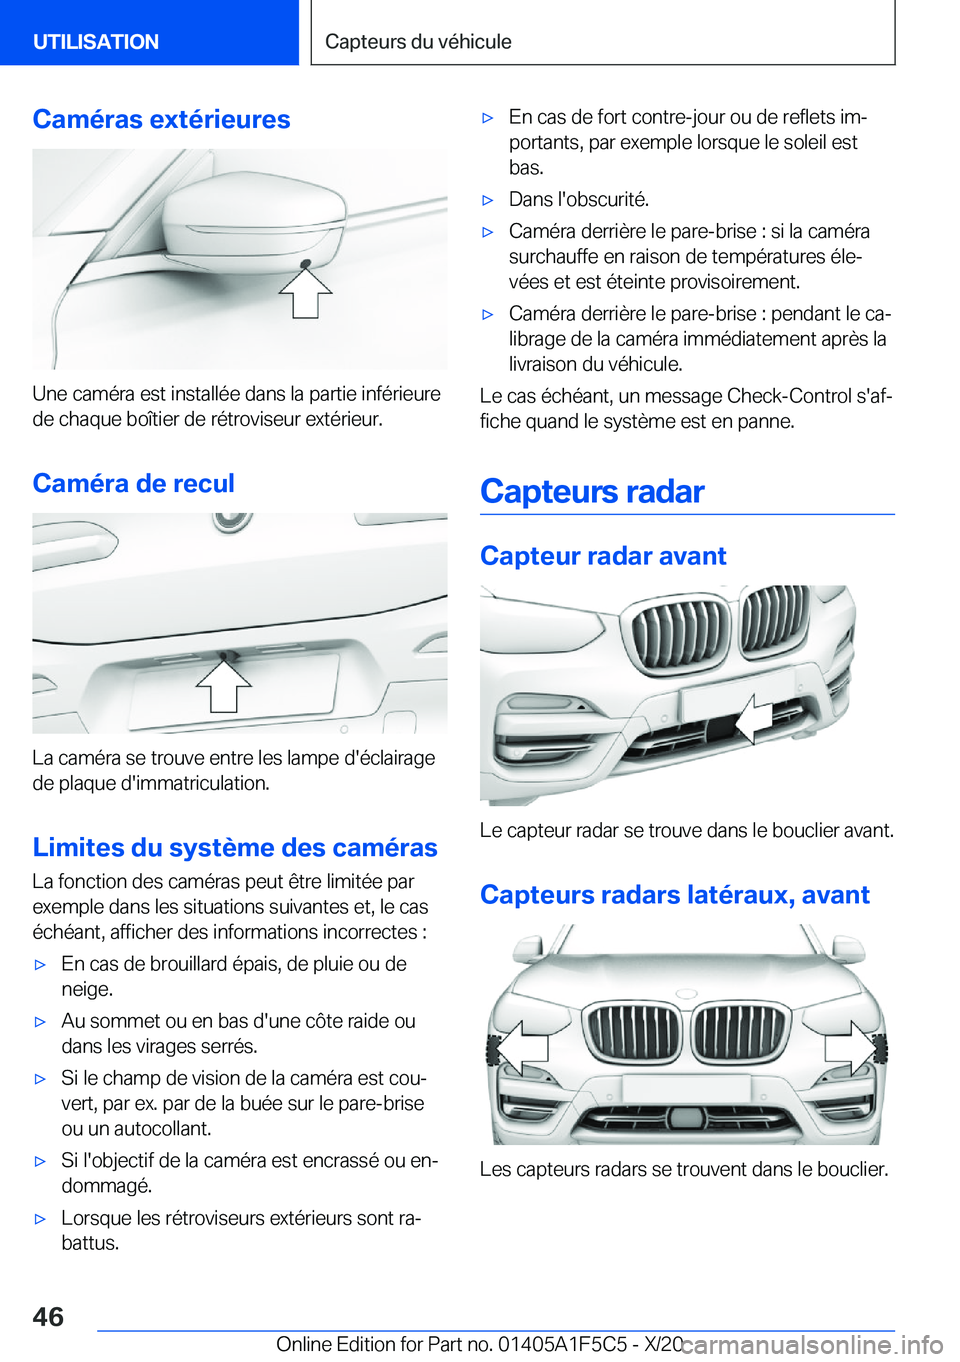 BMW X4 M 2021  Notices Demploi (in French) �C�a�m�é�r�a�s��e�x�t�é�r�i�e�u�r�e�s
�U�n�e��c�a�m�é�r�a��e�s�t��i�n�s�t�a�l�l�é�e��d�a�n�s��l�a��p�a�r�t�i�e��i�n�f�é�r�i�e�u�r�e�d�e��c�h�a�q�u�e��b�o�